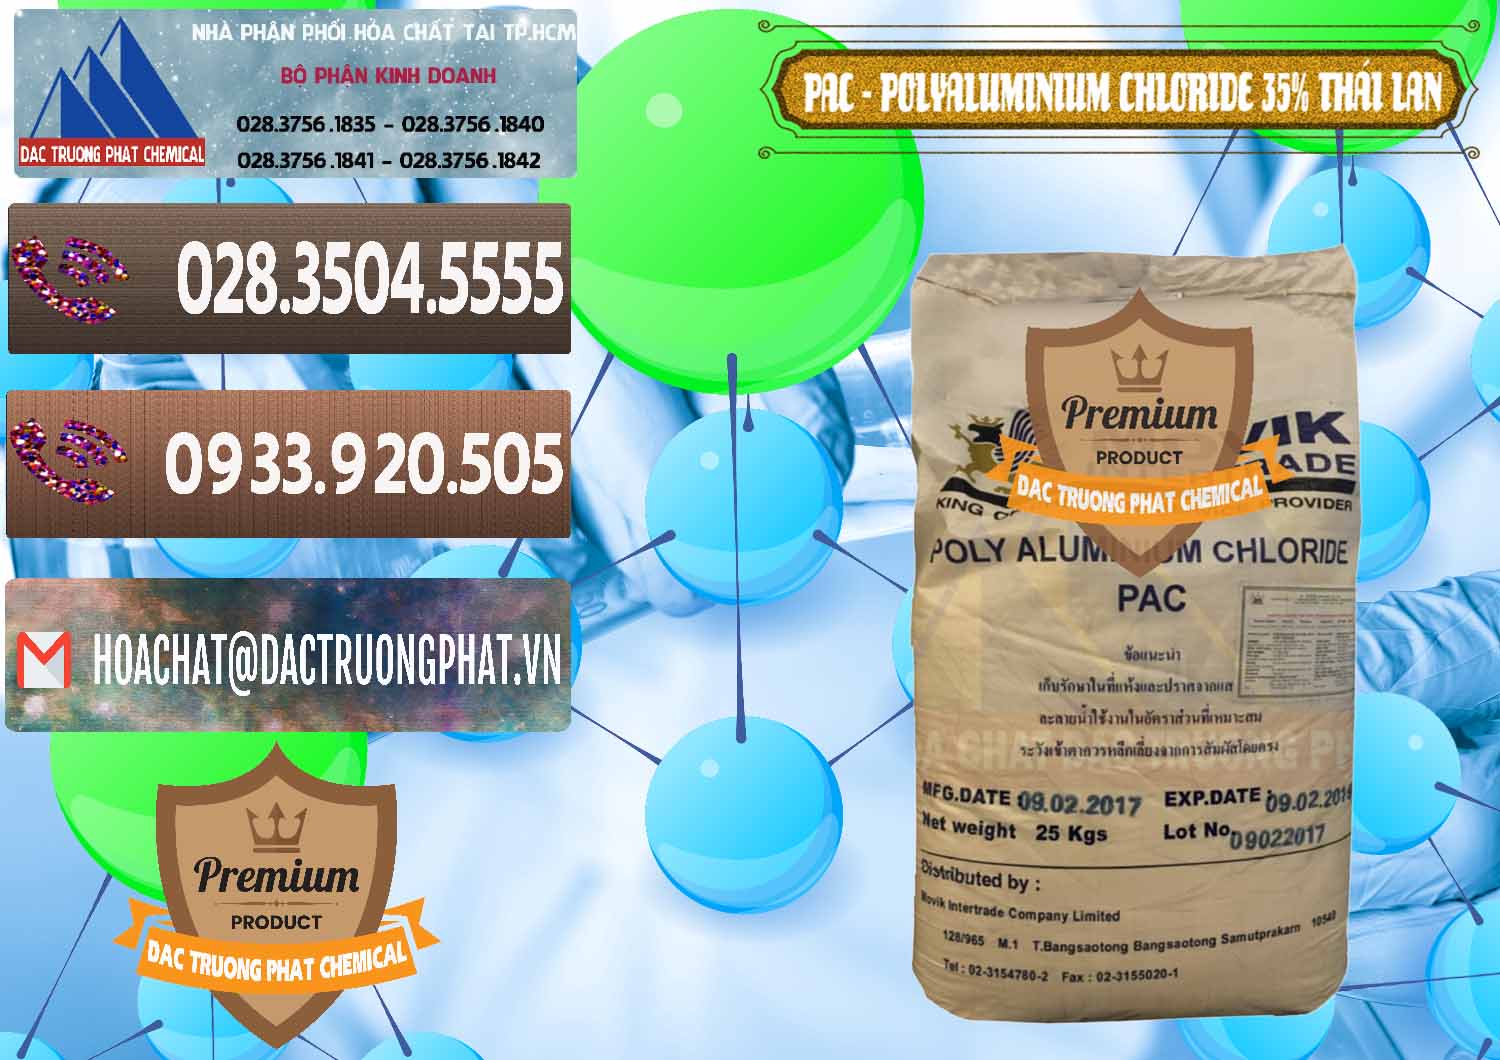 Nơi cung ứng ( bán ) PAC - Polyaluminium Chloride 35% Thái Lan Thailand - 0470 - Công ty cung cấp và phân phối hóa chất tại TP.HCM - hoachatviet.net